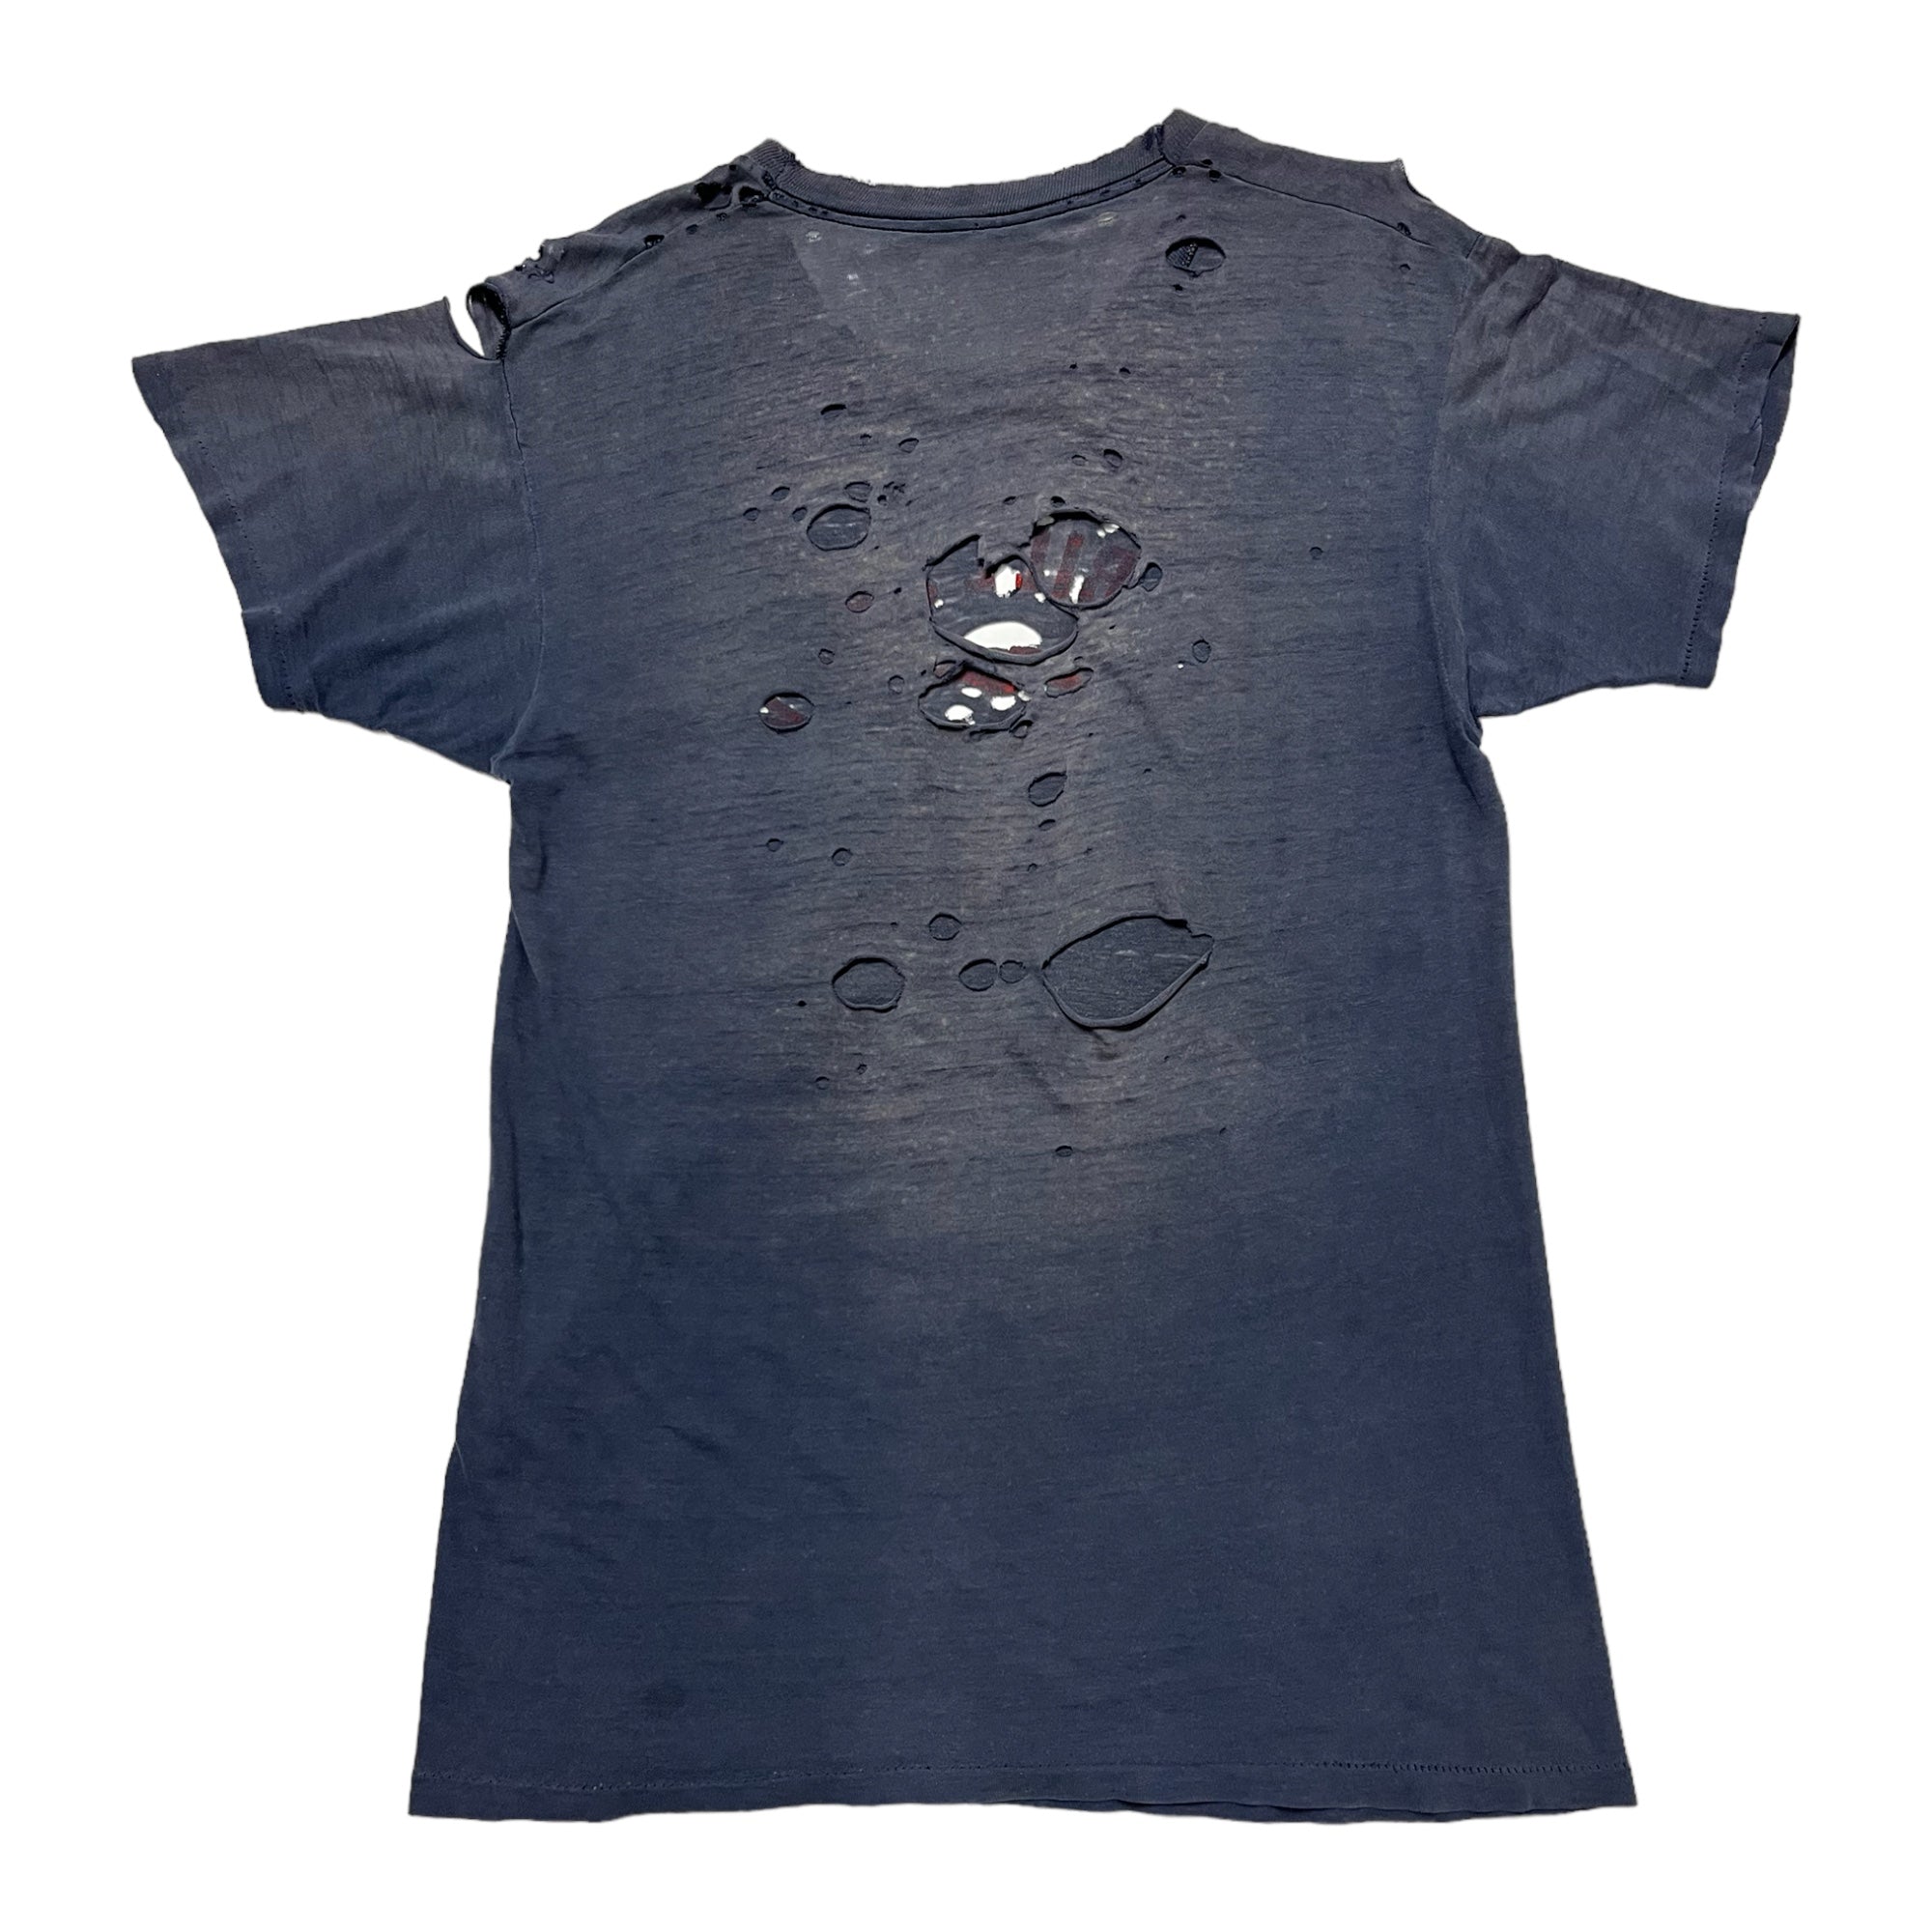 1970s ‘Mr. Bill Show’ Thrashed T-Shirt - Faded Navy - M/L